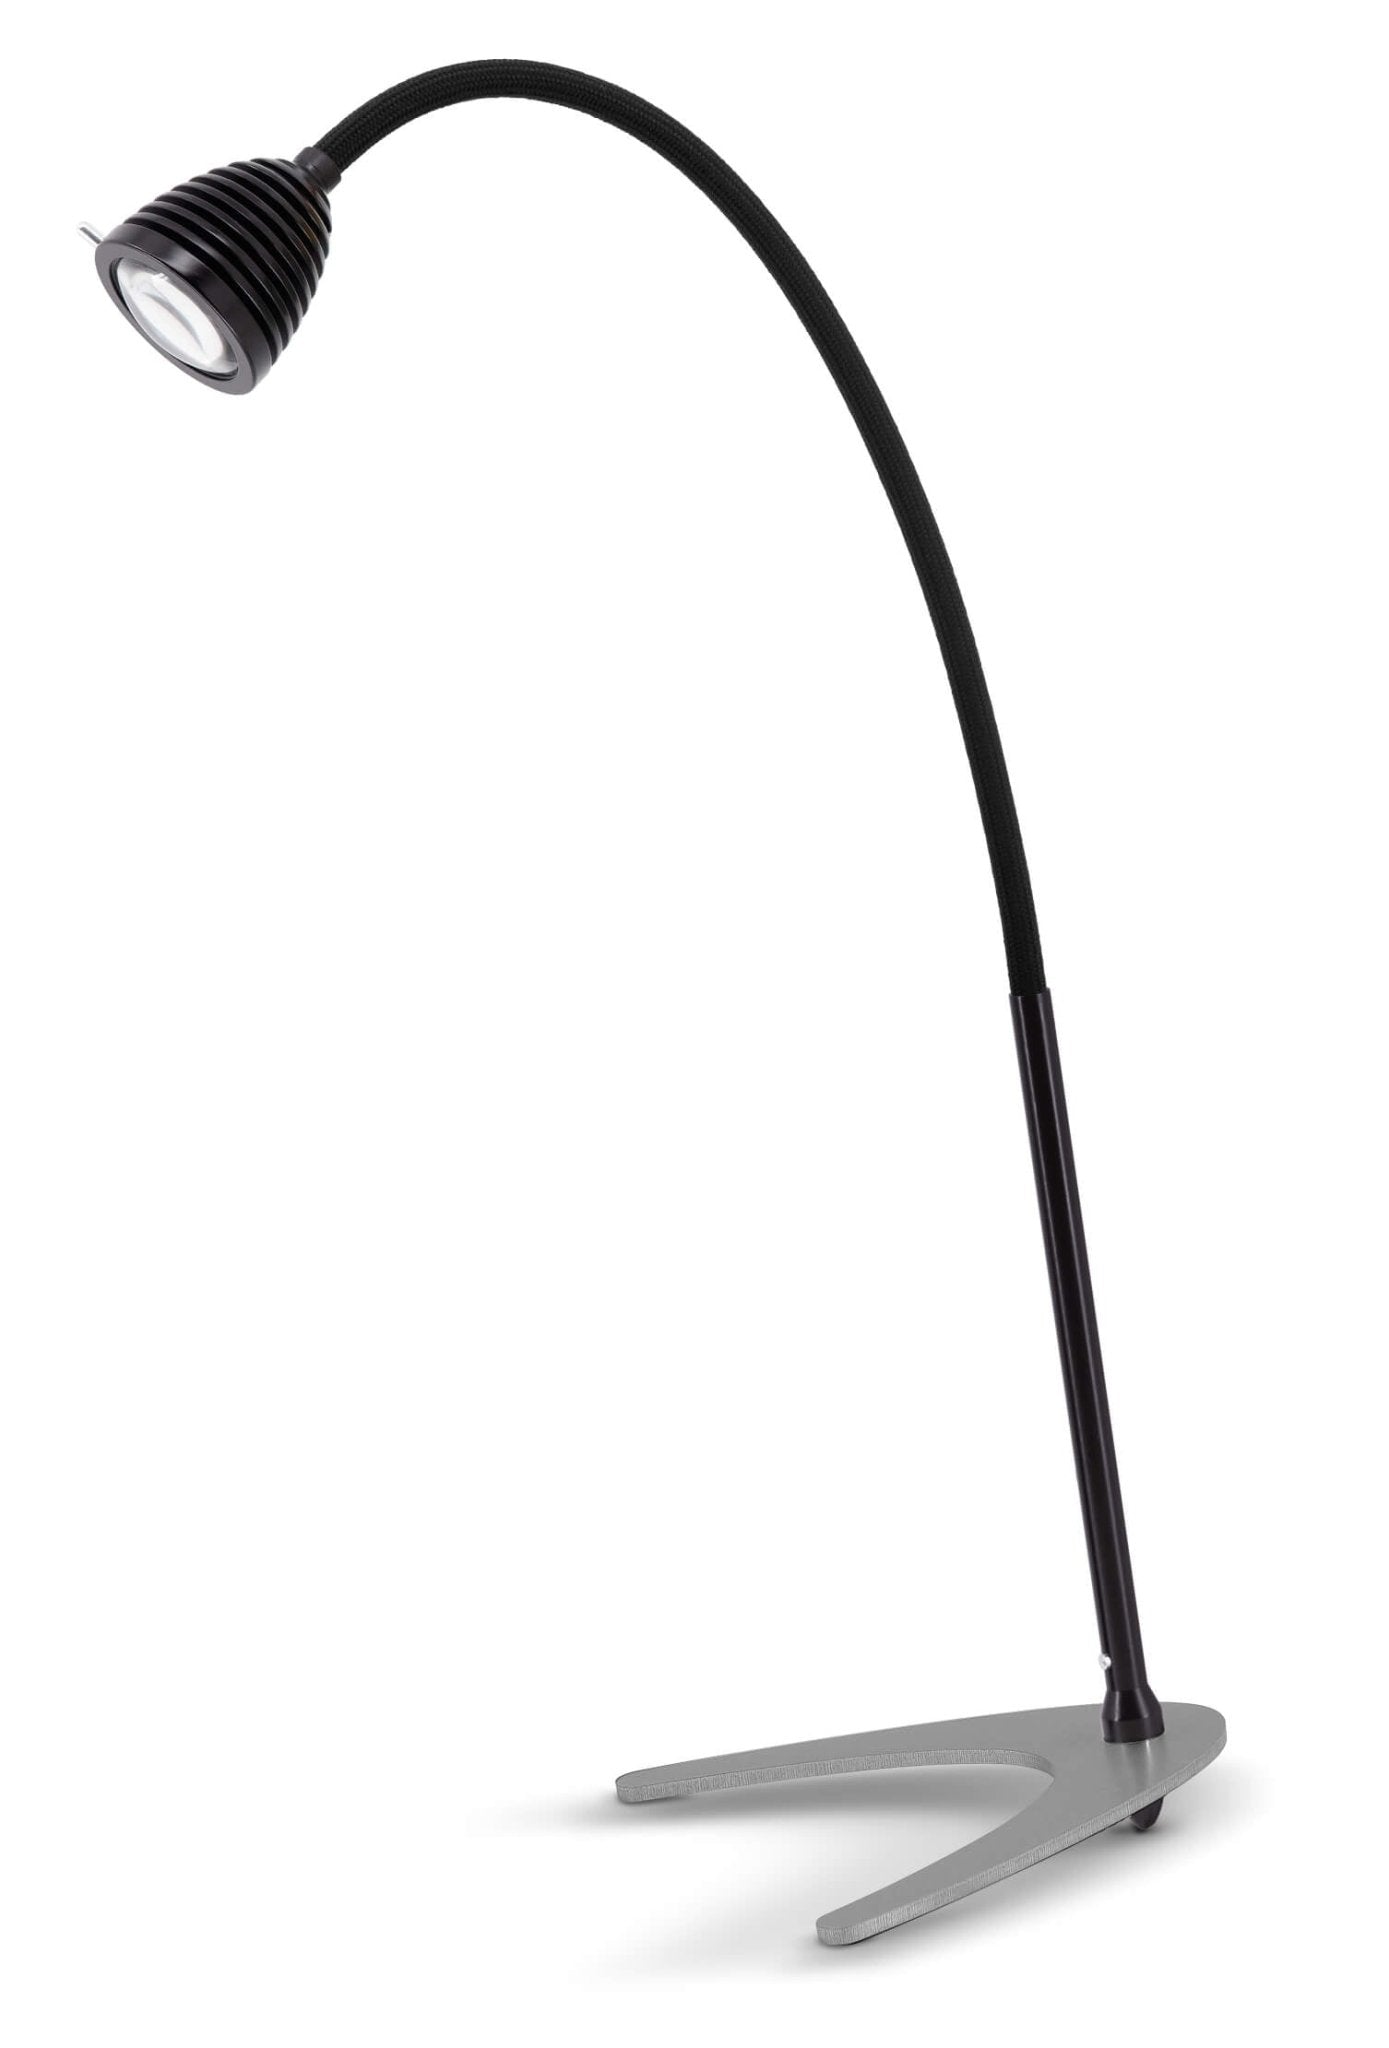 Less 'n' more - Athene TL Groot Tafellamp zwart - KOOT